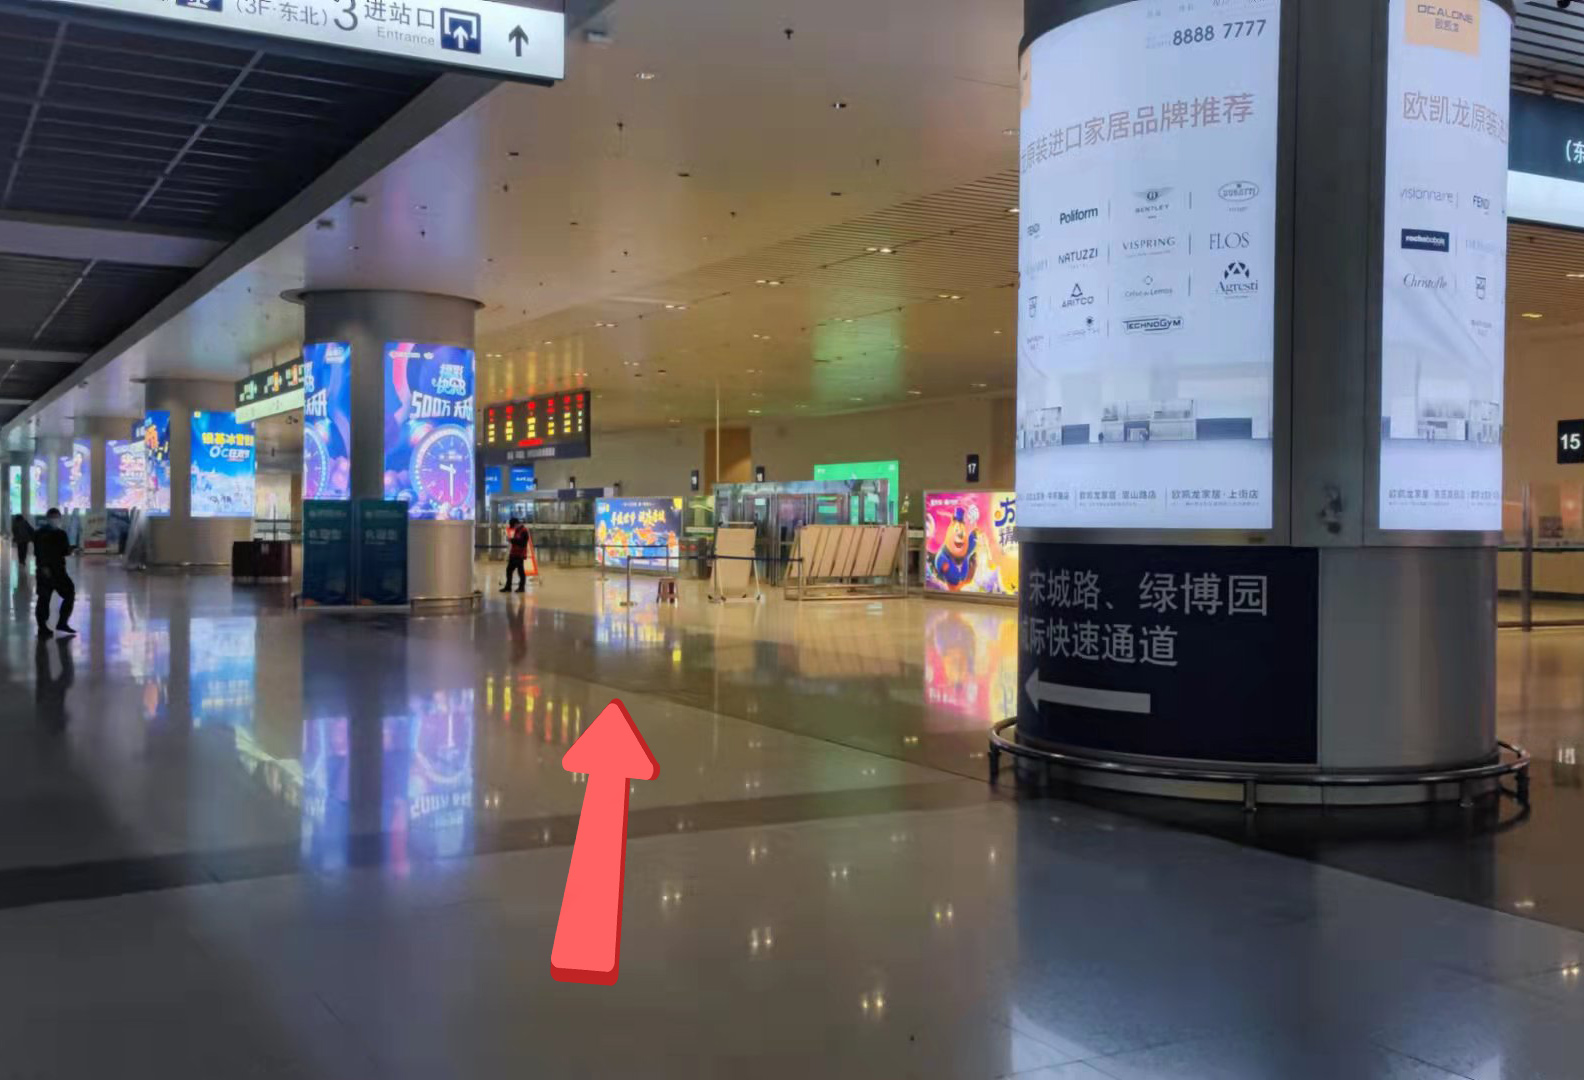 旅客到达郑州东站地铁站后,可从地铁d口或e口到达郑州东站一层,建议从